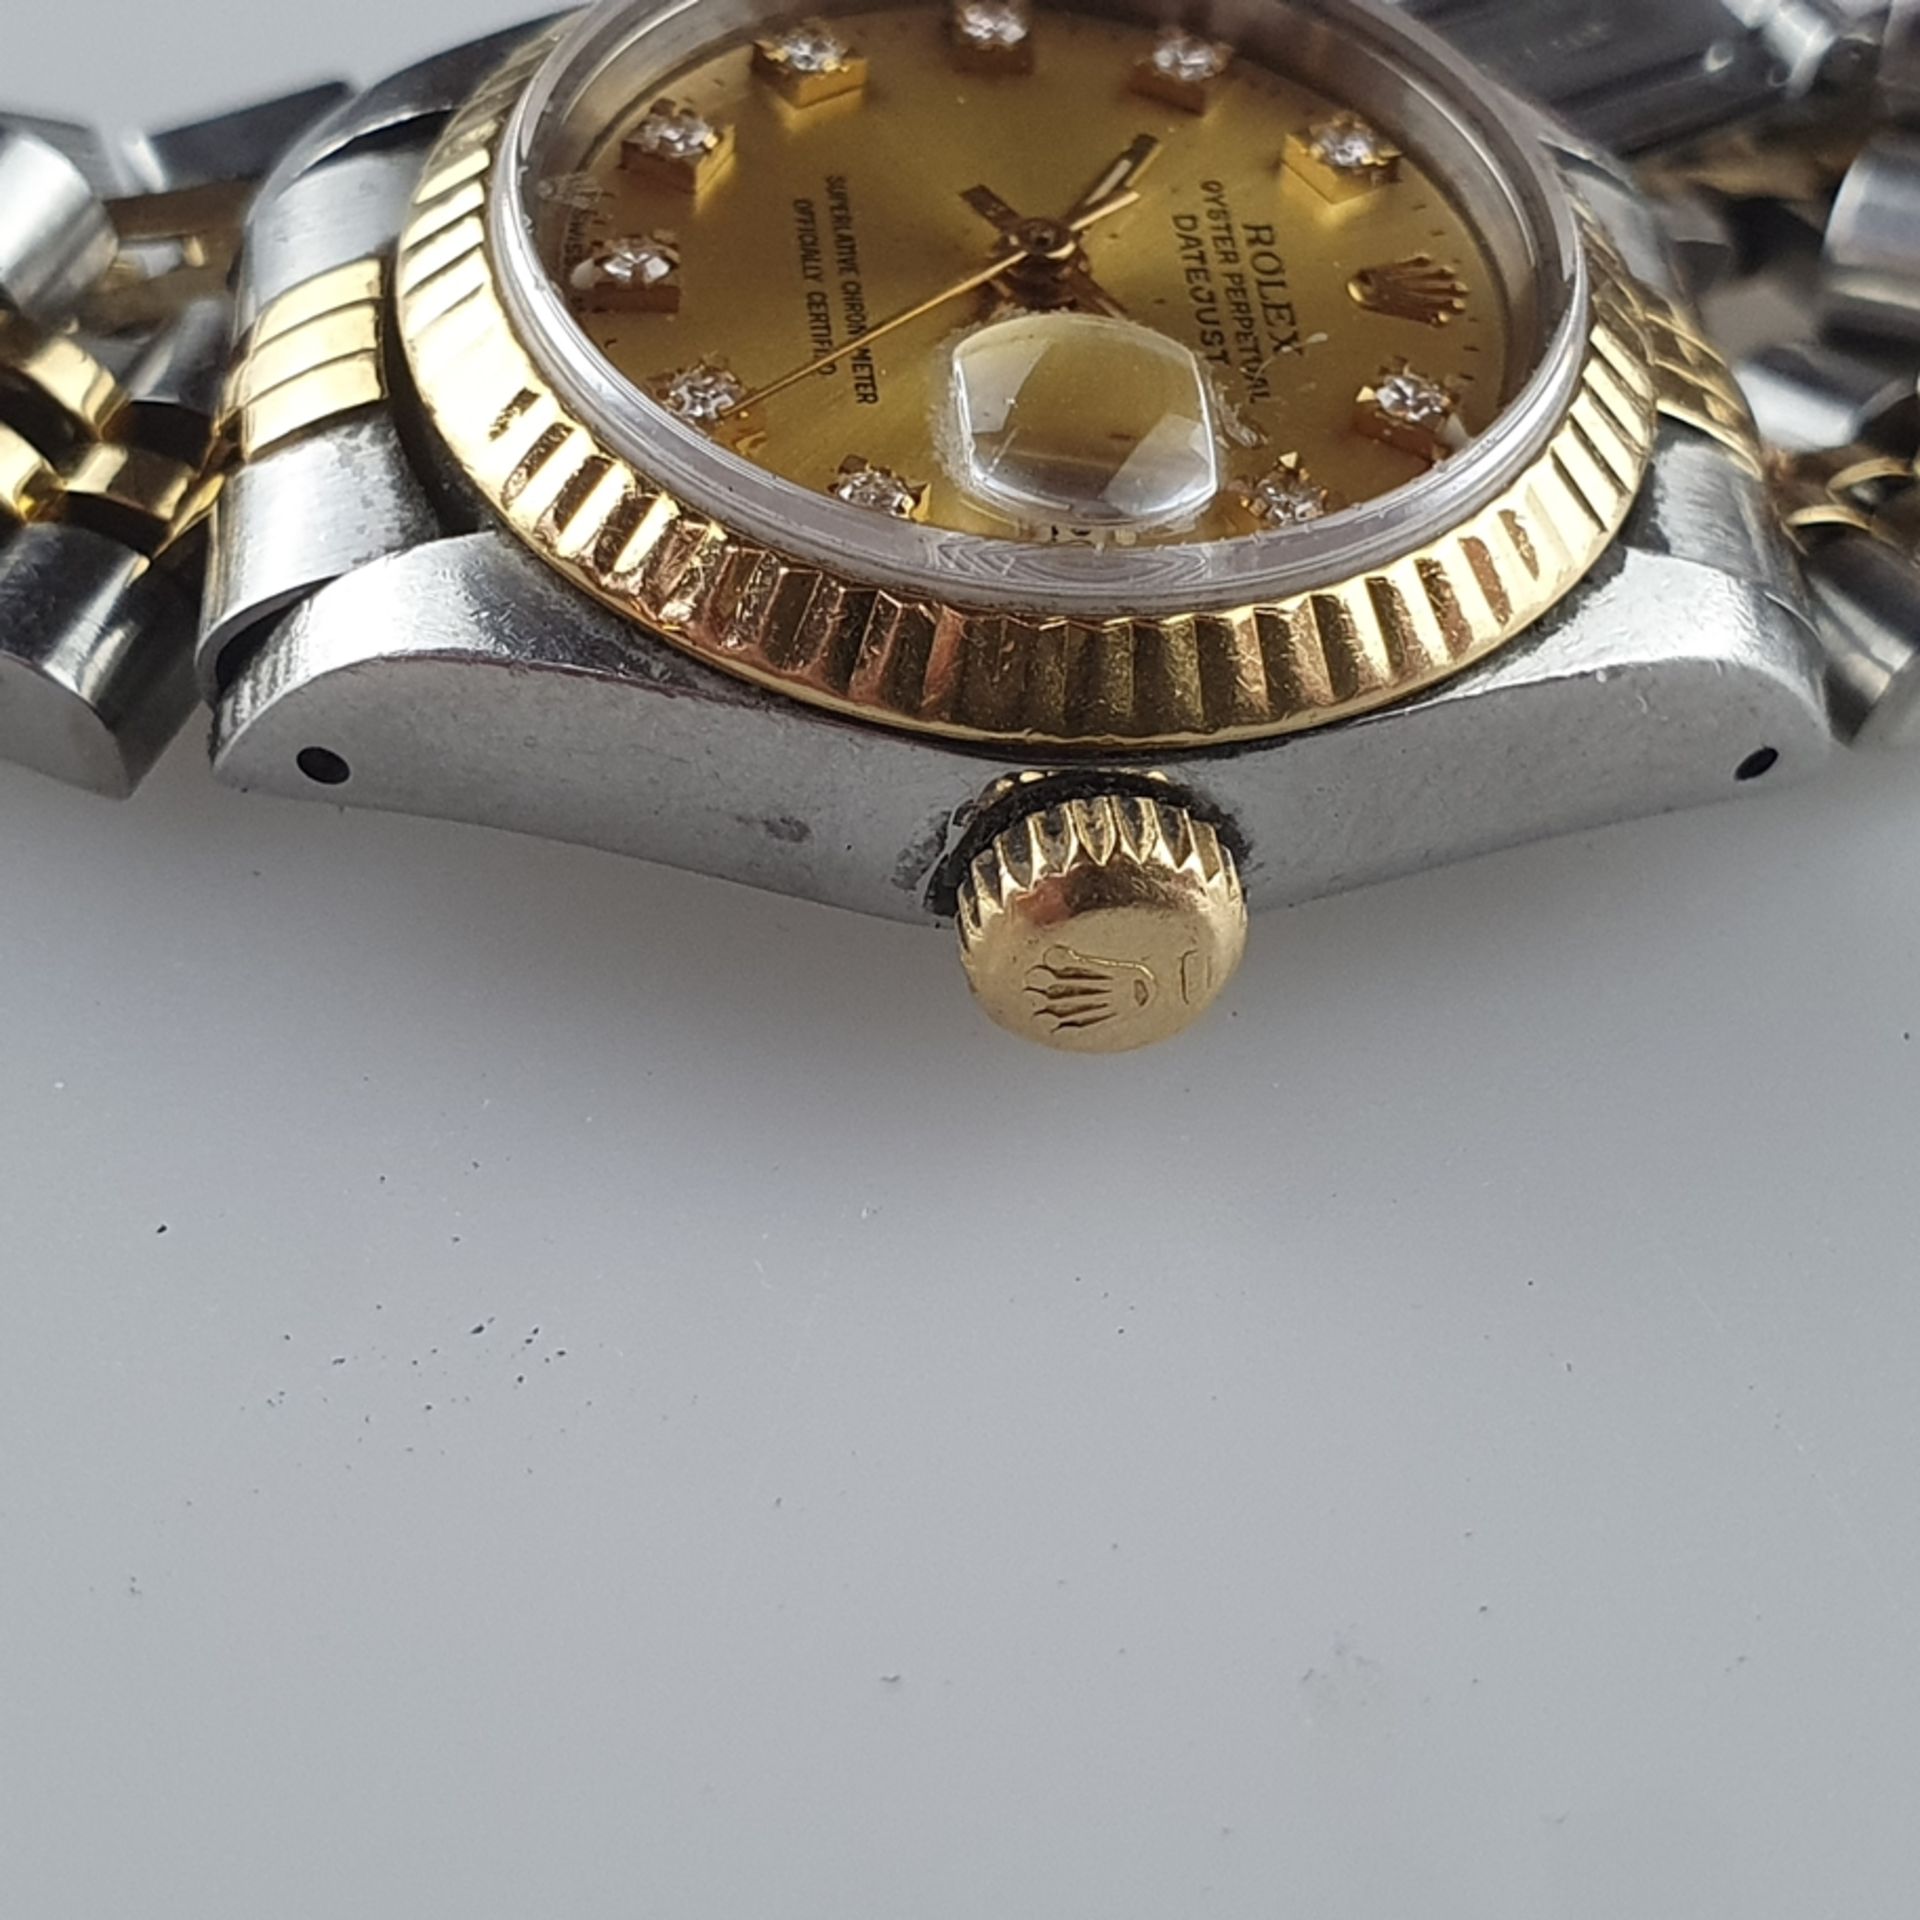 Damenarmbanduhr - Rolex Oyster Perpetual Datejust, Referenznummer 69173, Gehäuse in Edelstahl & Gol - Bild 3 aus 11